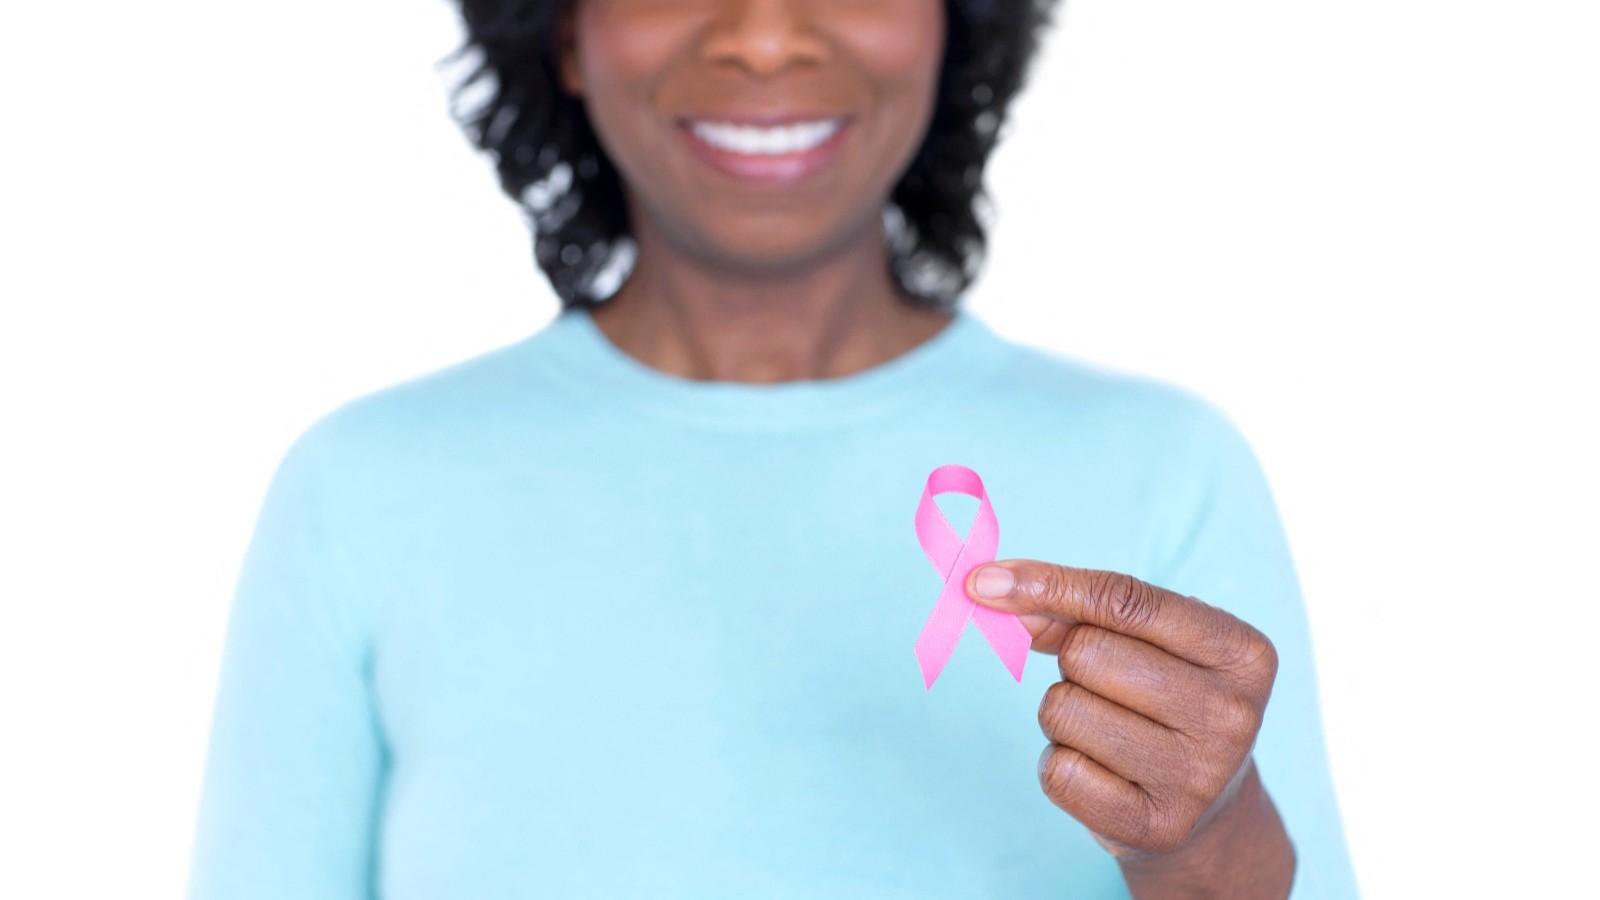 سرطان الثدي.. خطوات للوقاية من مرض "لا يصيب النساء فقط"